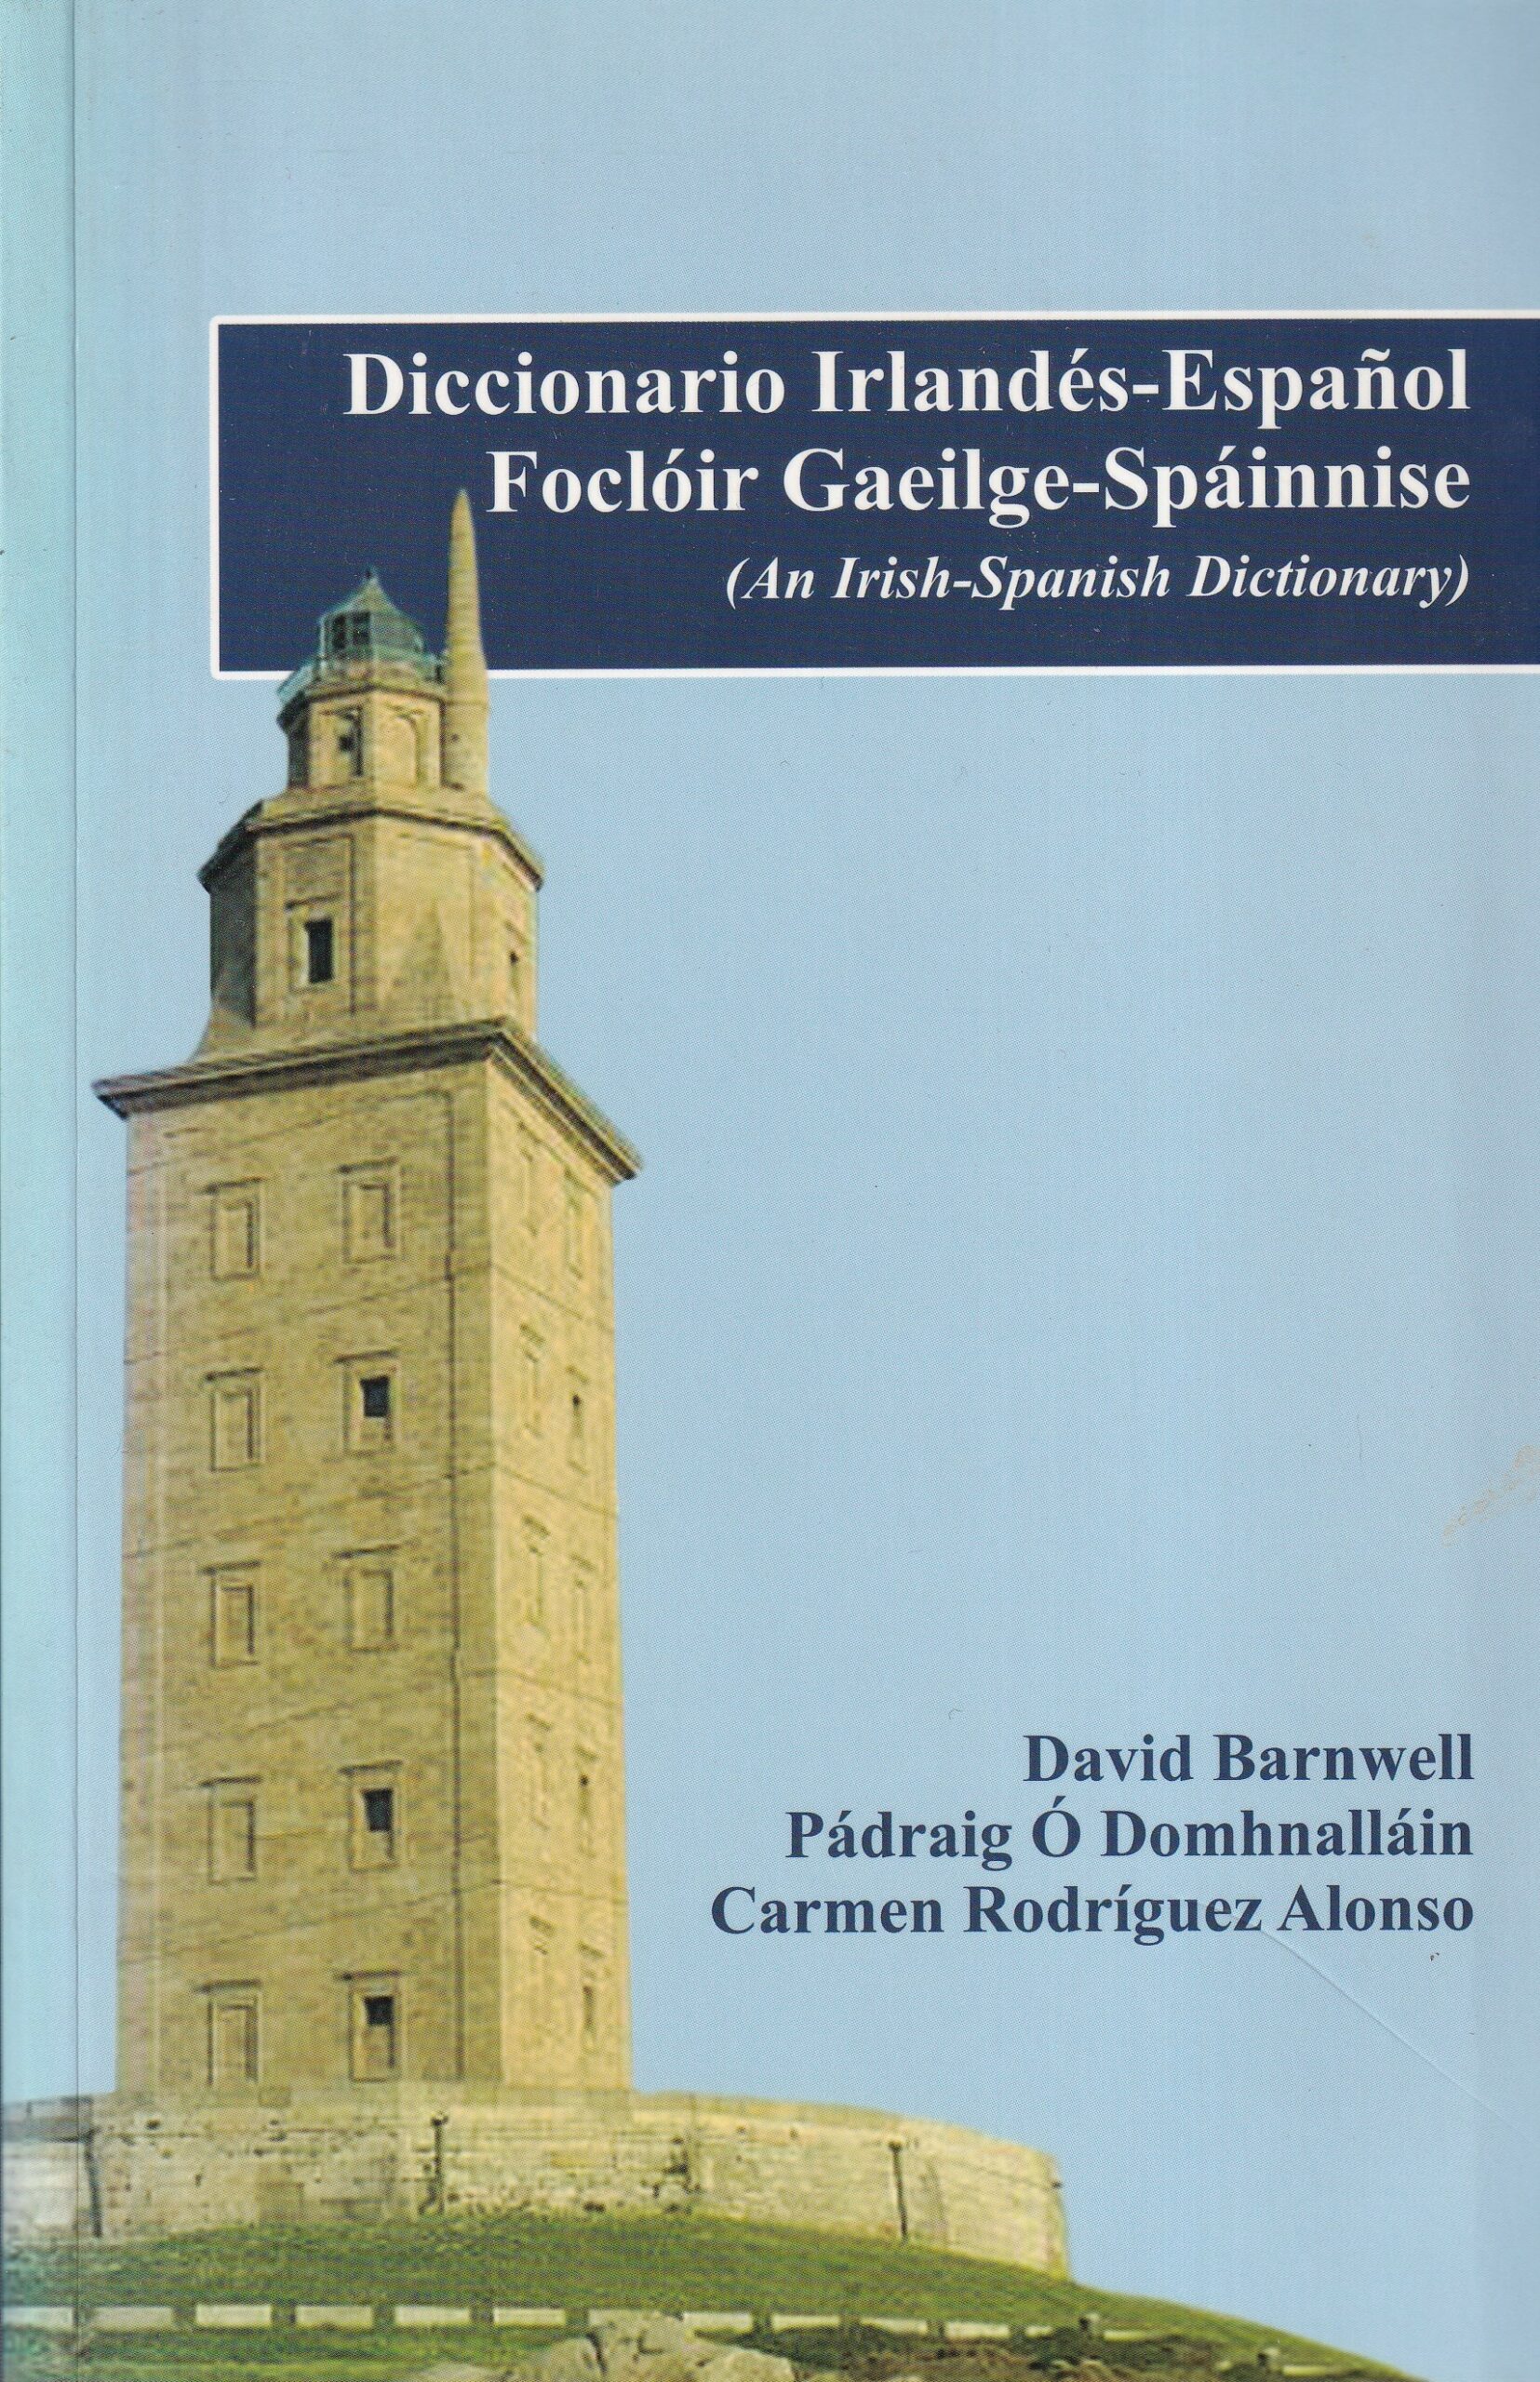 Diccionario Irlandés- Español/ Focloir Gaeilge- Spáinnise (An Irish- Spanish Dictionary) | David Barnwell, Pádraig Ó Domhnalláin and Carmen Rodríguez Alonso | Charlie Byrne's